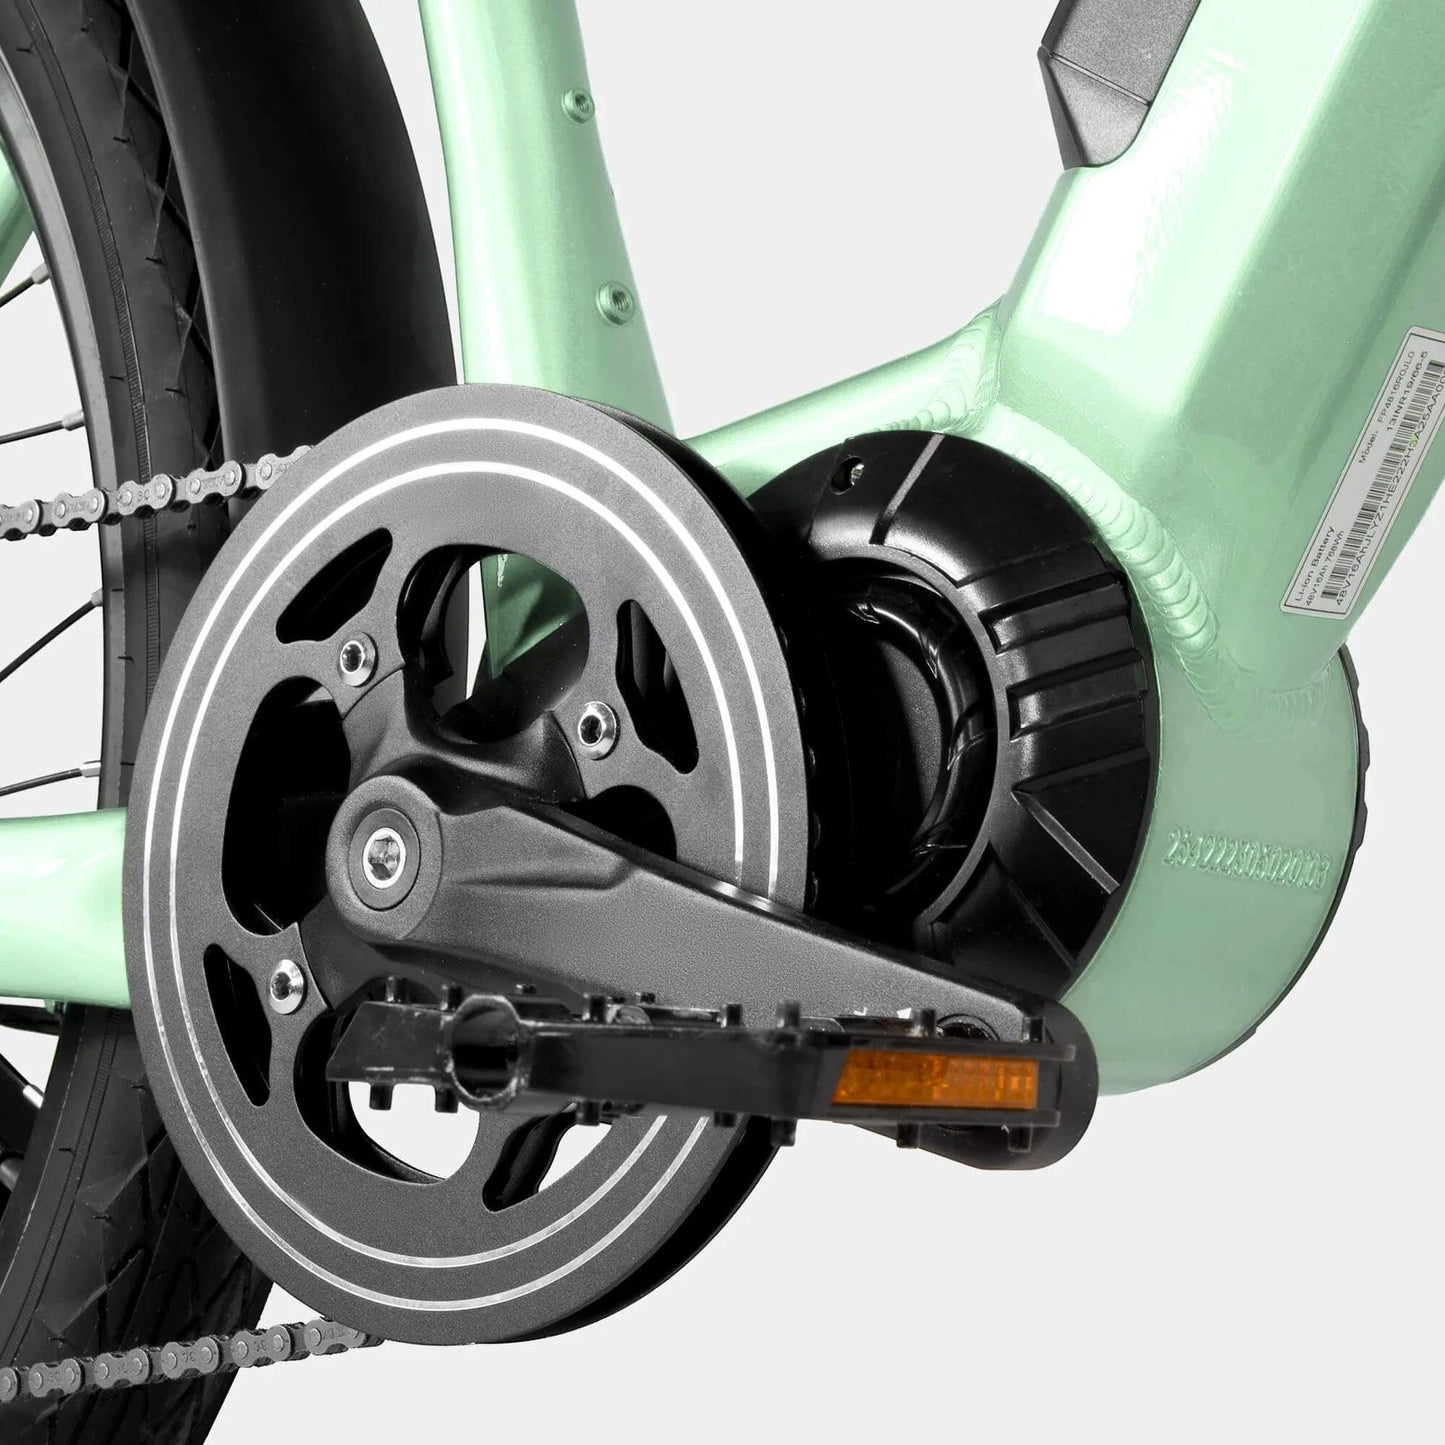 Crazybird Seta E-Bike - Pogo Cycles